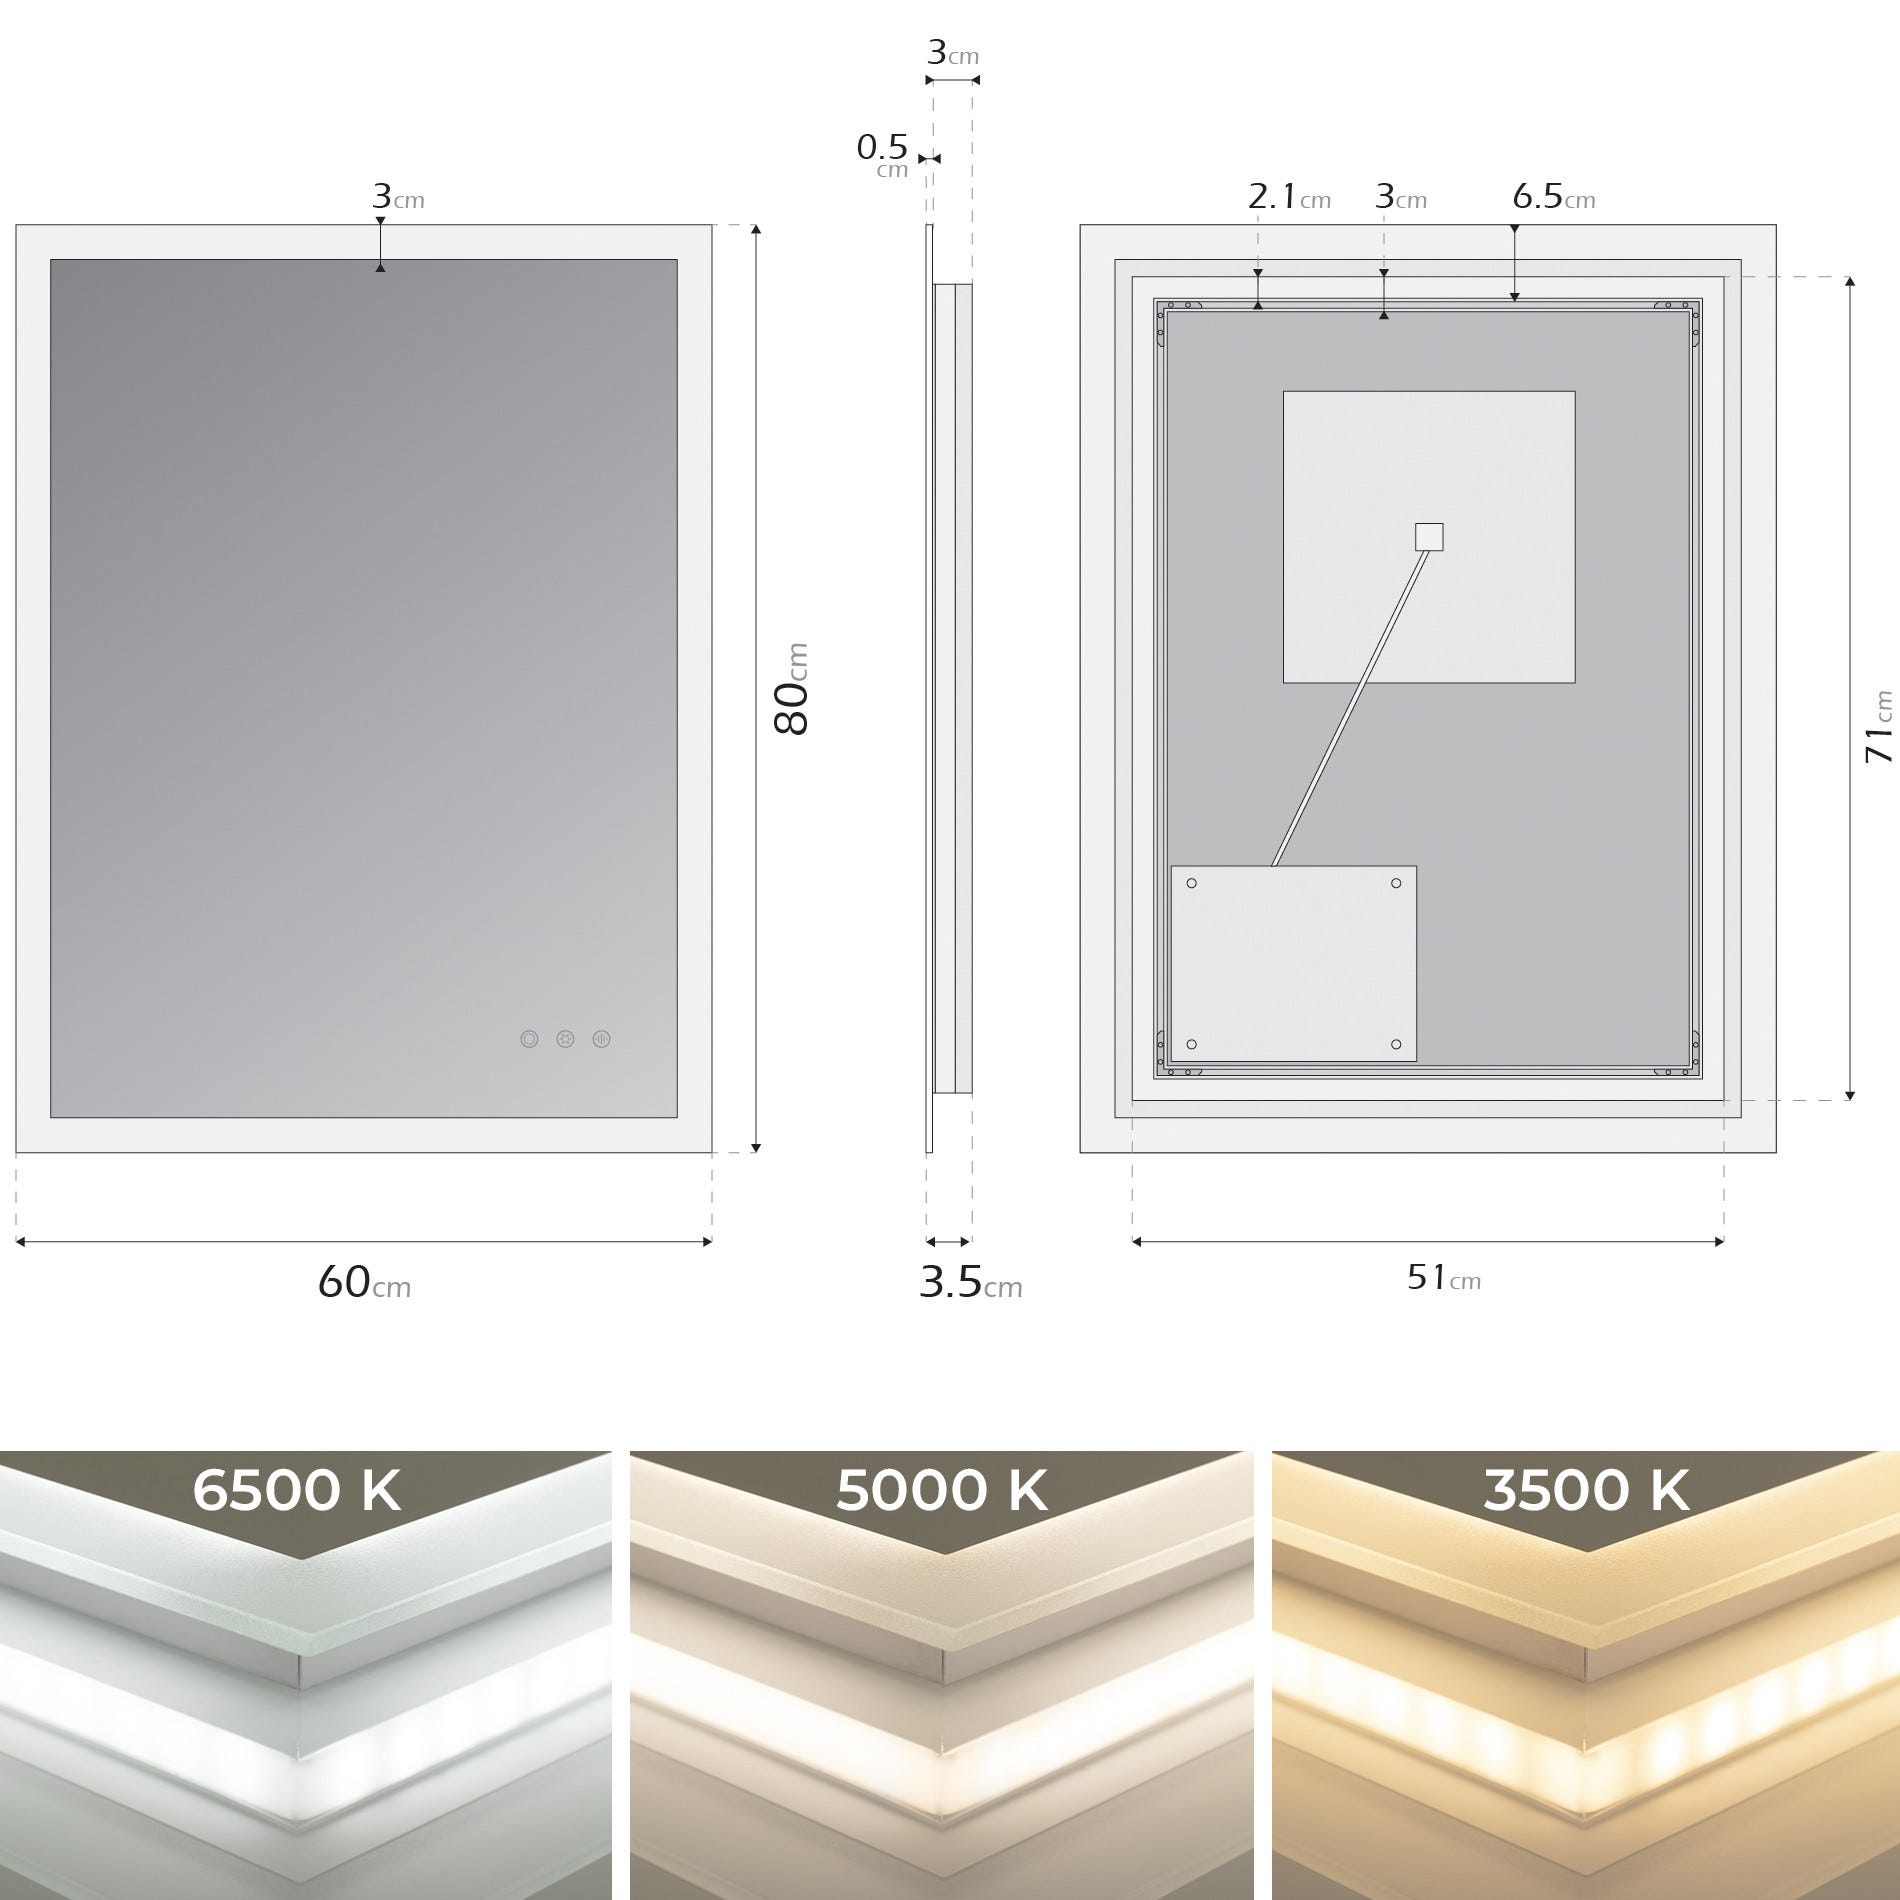 FRAME Miroir lumineux salle de bain LED 3 couleurs + intensité réglable & fonction anti-buée 60 x 80 cm 4